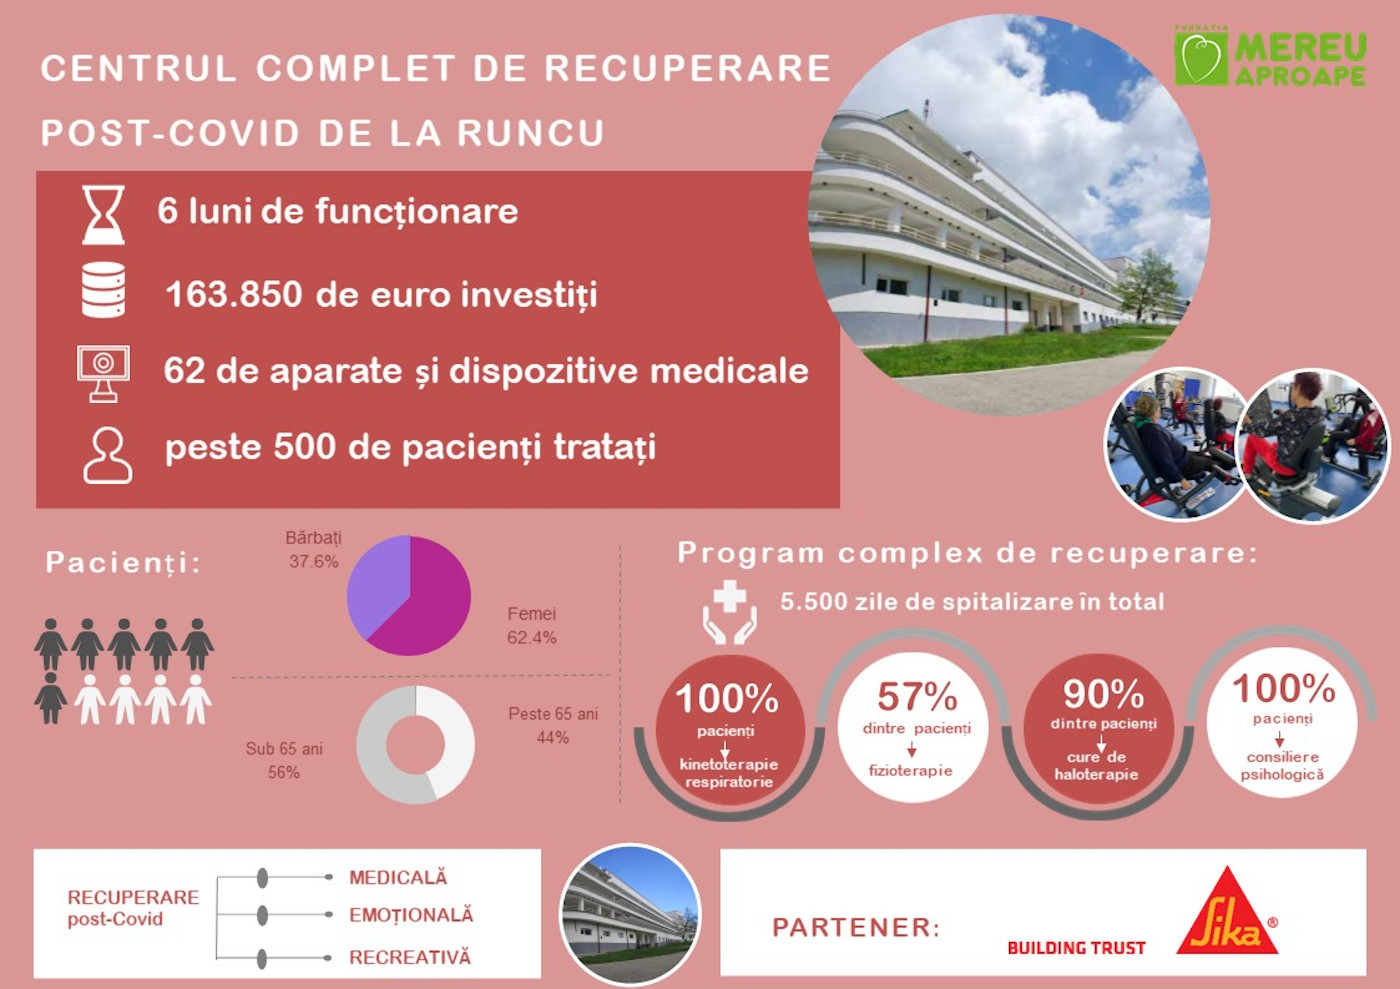 Fundația Mereu Aproape a dotat cu aparatură medicală performantă în valoare de 163.850 euro Centrul complet de recuperare post-Covid de la Runcu